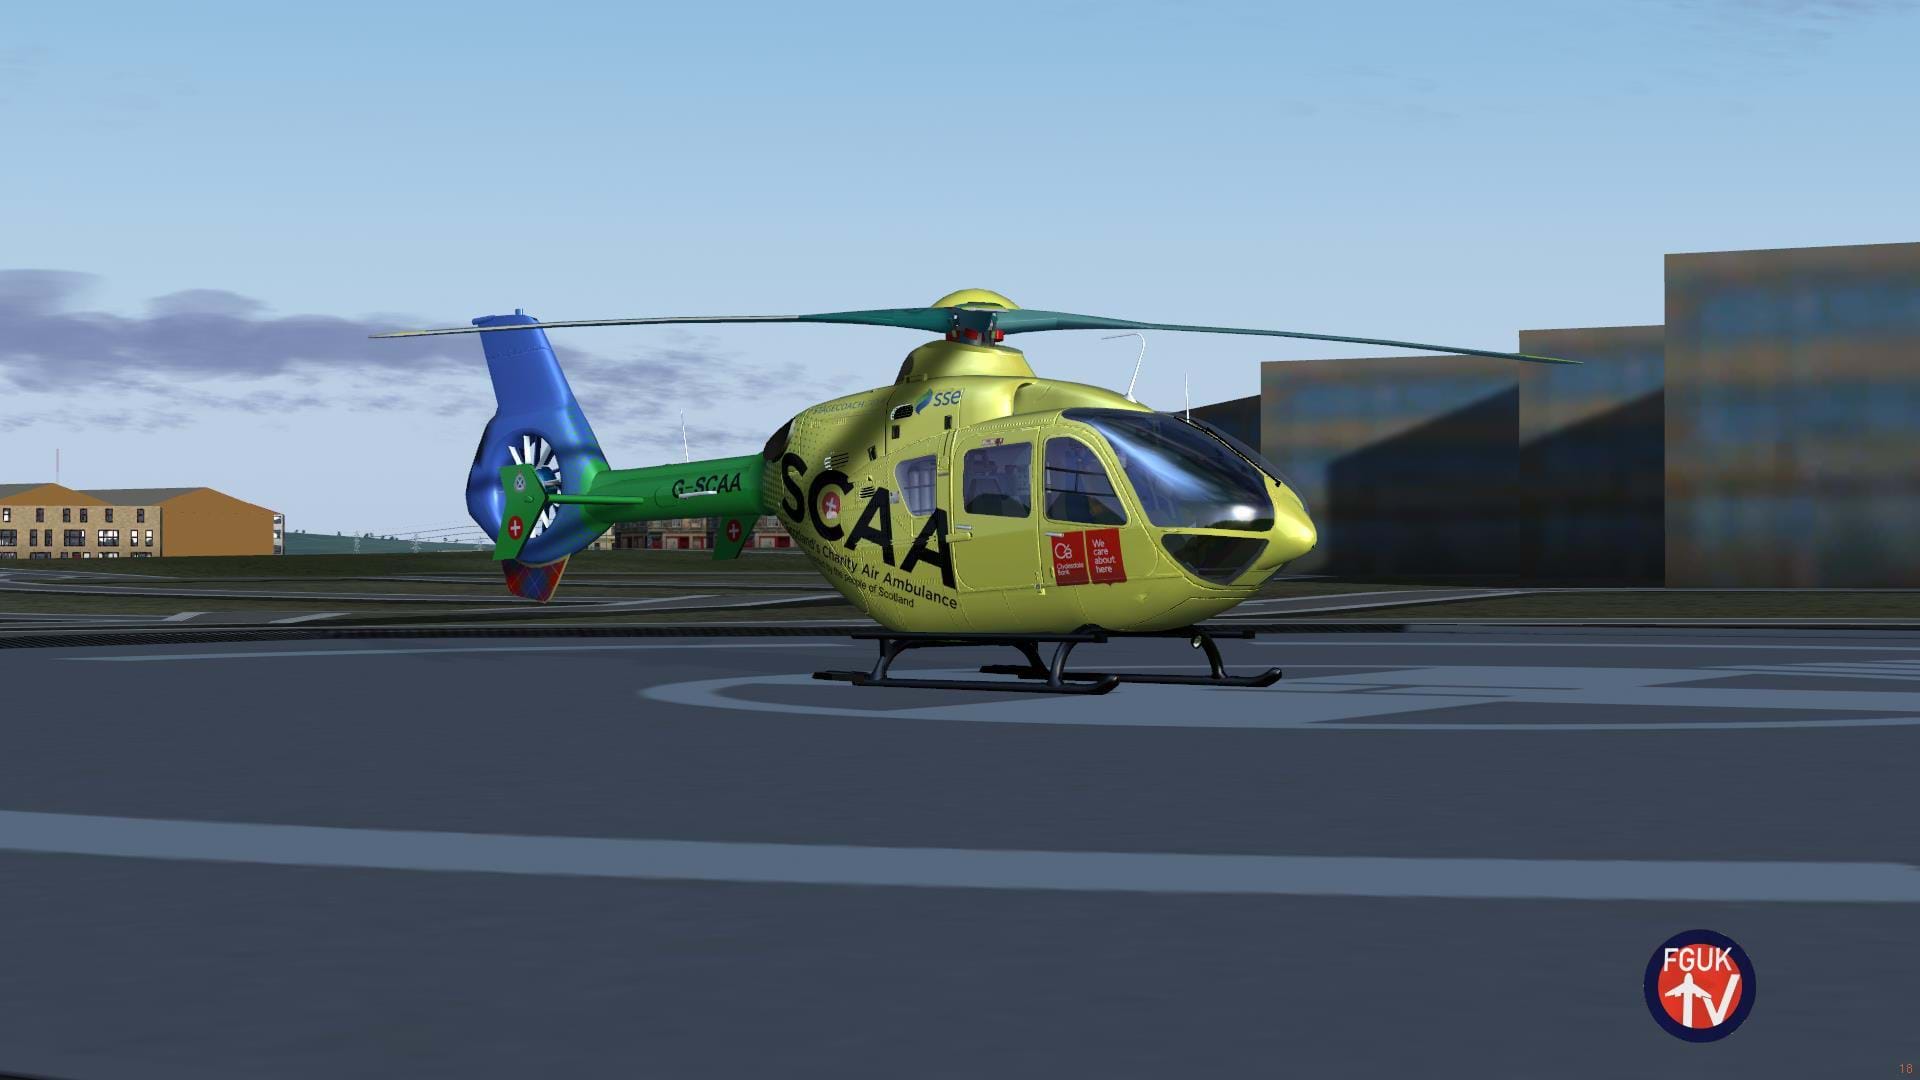 FGUK released Hospital Helipads for Scotland for FlightGear